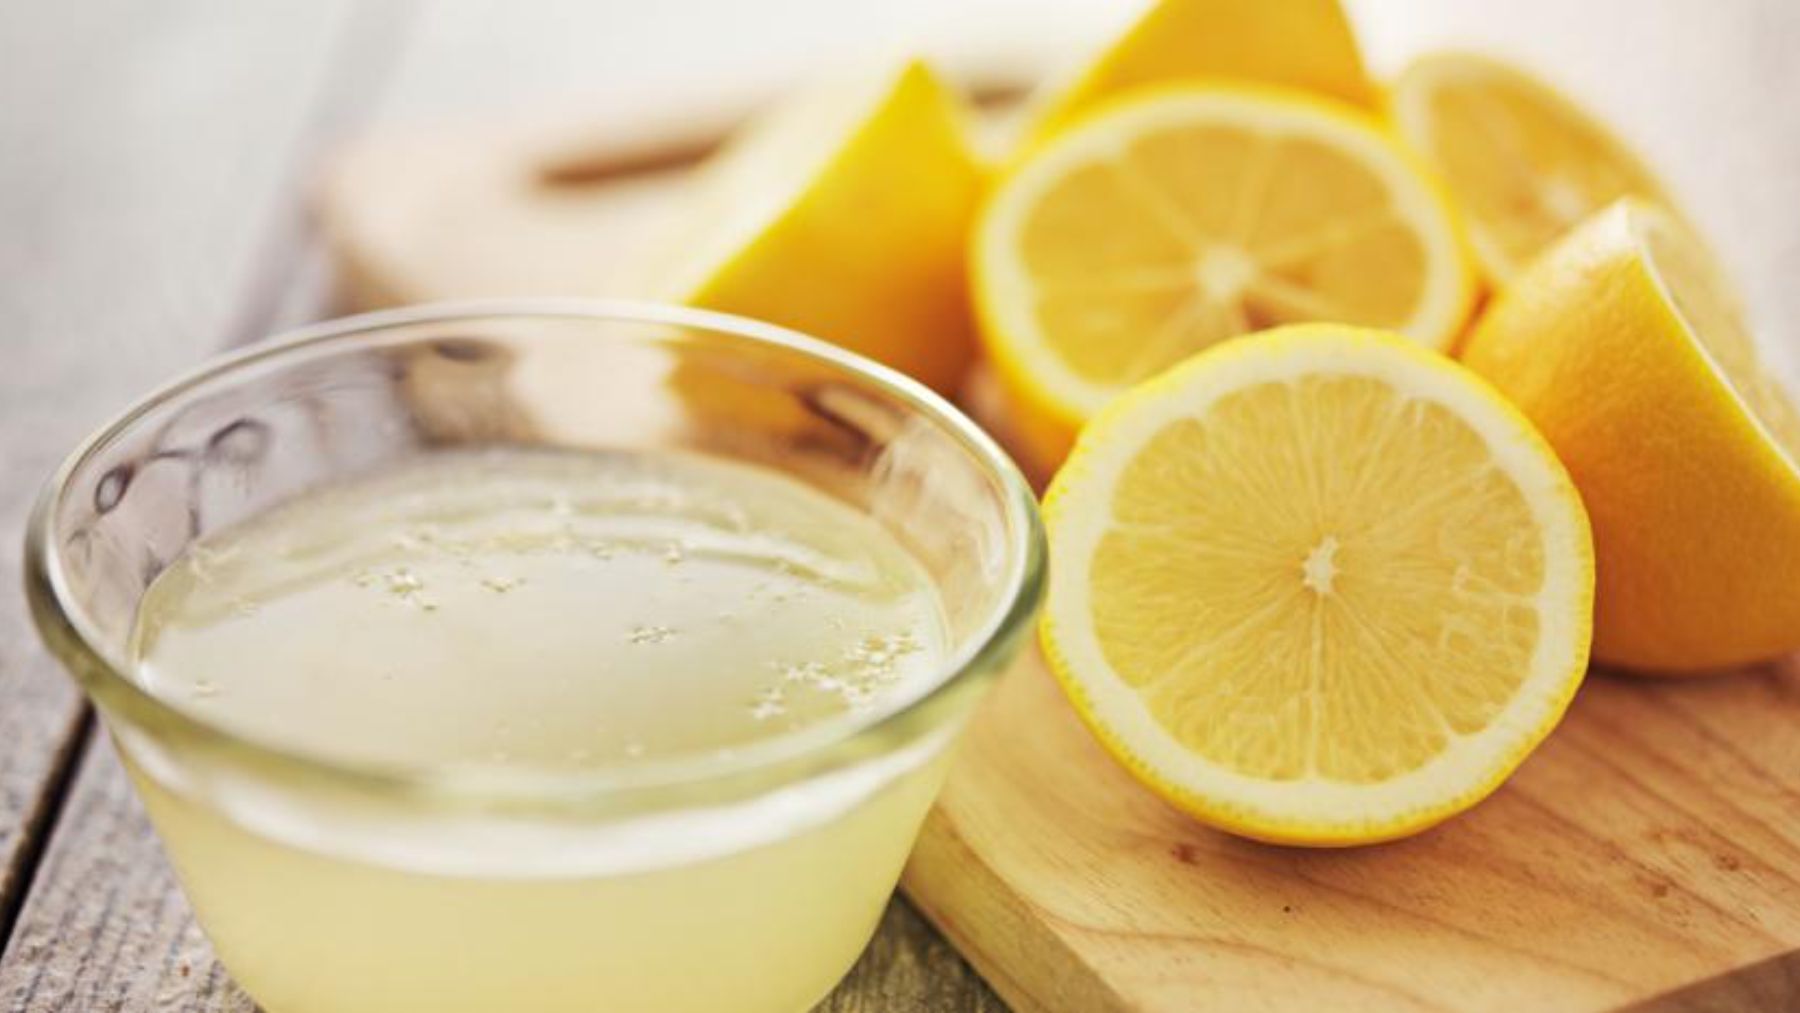 La sencilla dieta del limón para deshincharte tras los excesos de Navidad: adelgaza 7 kilos